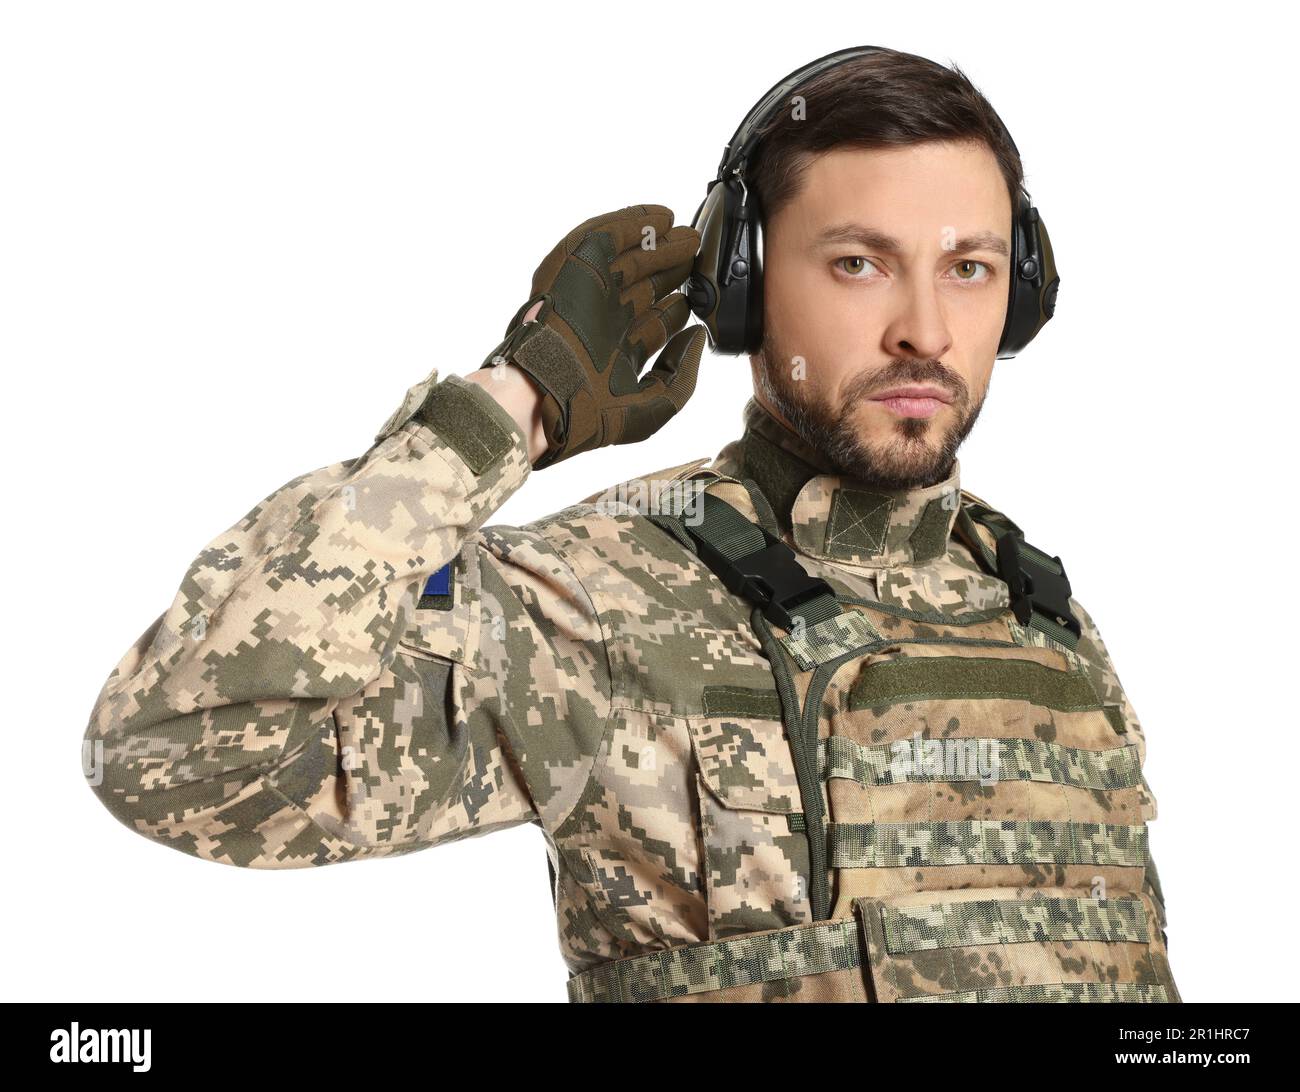 Soldat ukrainien en uniforme militaire et casque tactique actif sur fond blanc Banque D'Images